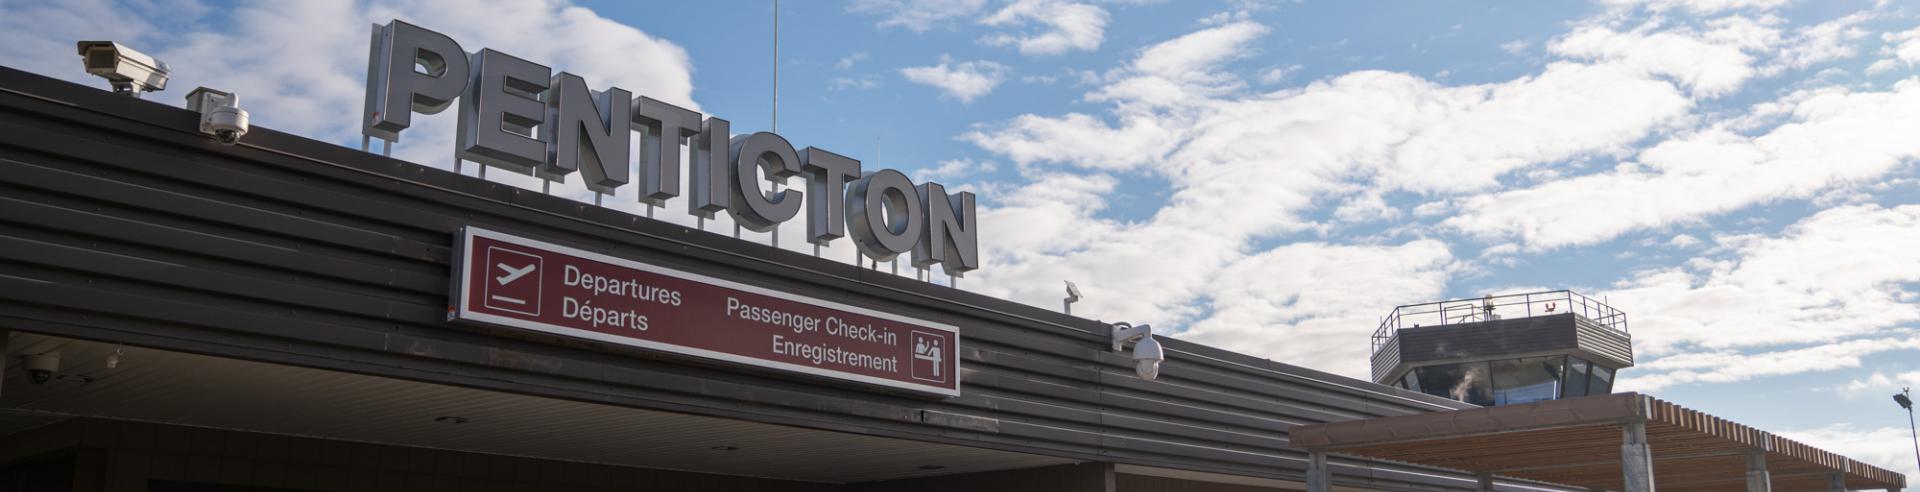 Penticton Airport 